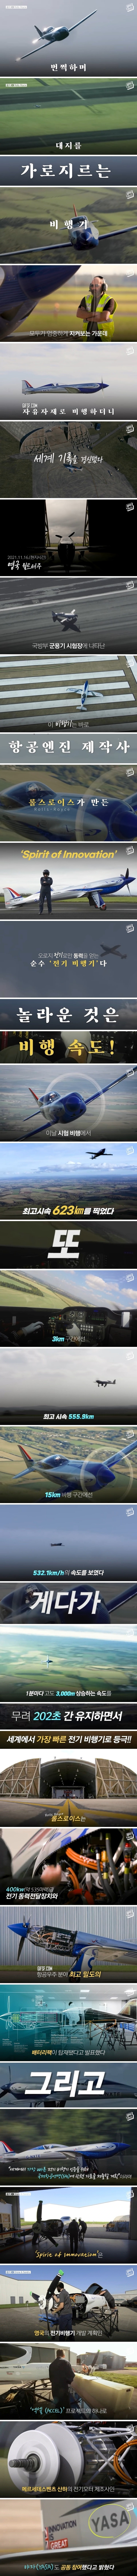 롤스로이스가 작심하고 만든 최고 속도의 ',전기 비행기',.jpg